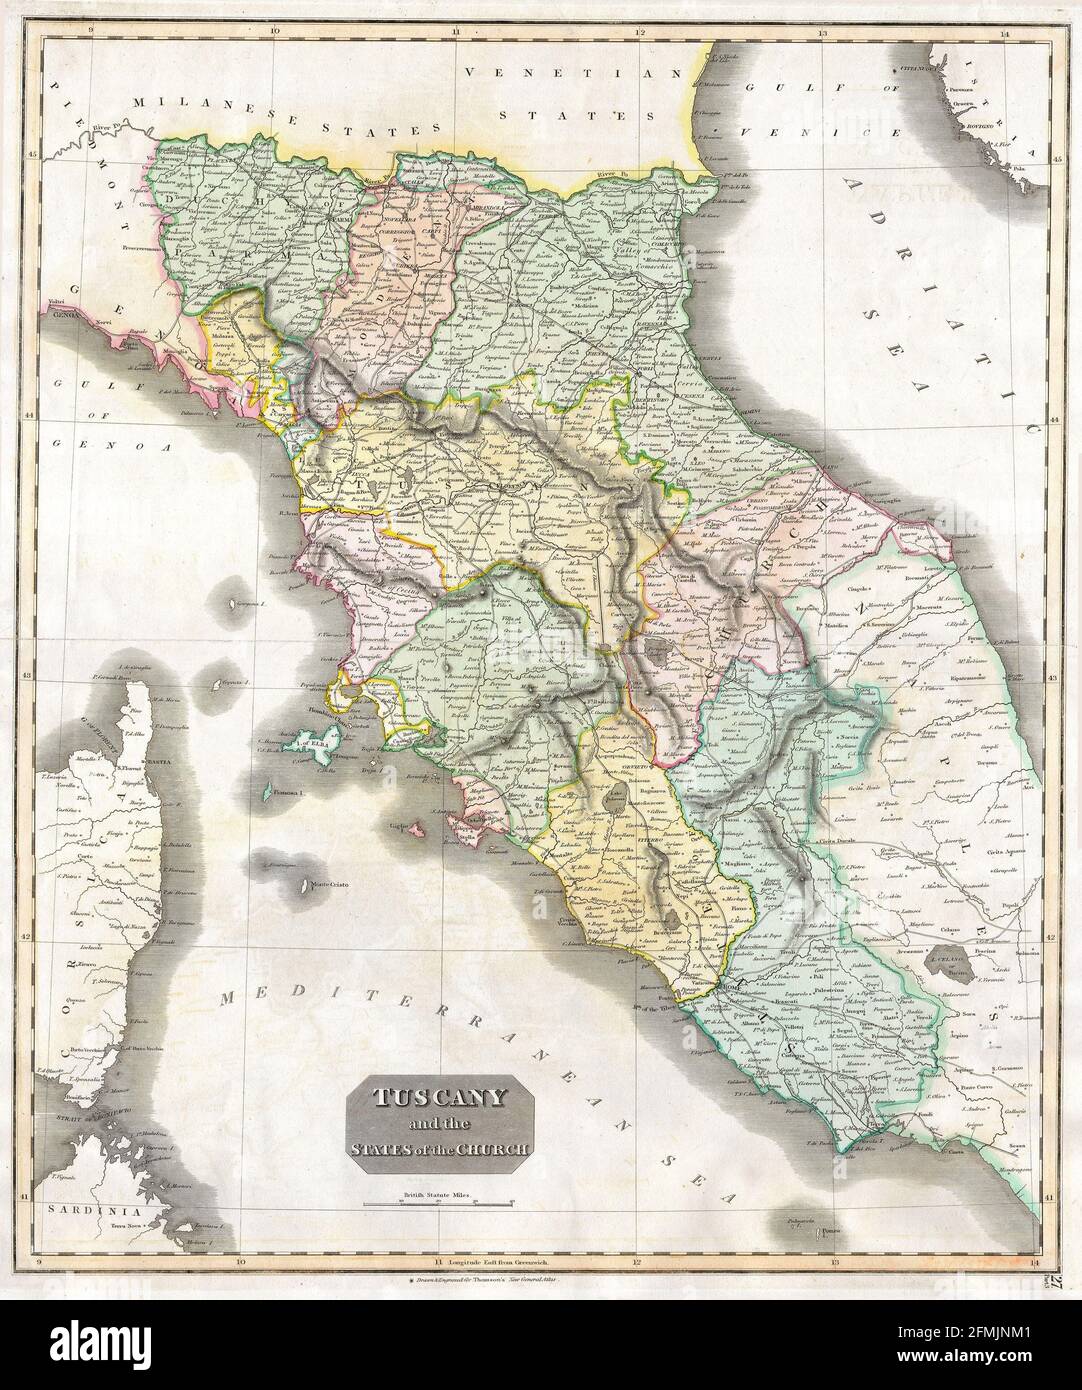 Carte ancienne de Toscane gravée en cuivre du XIXe siècle. Toutes les cartes sont magnifiquement colorées et illustrées montrant le monde à l'époque. Banque D'Images